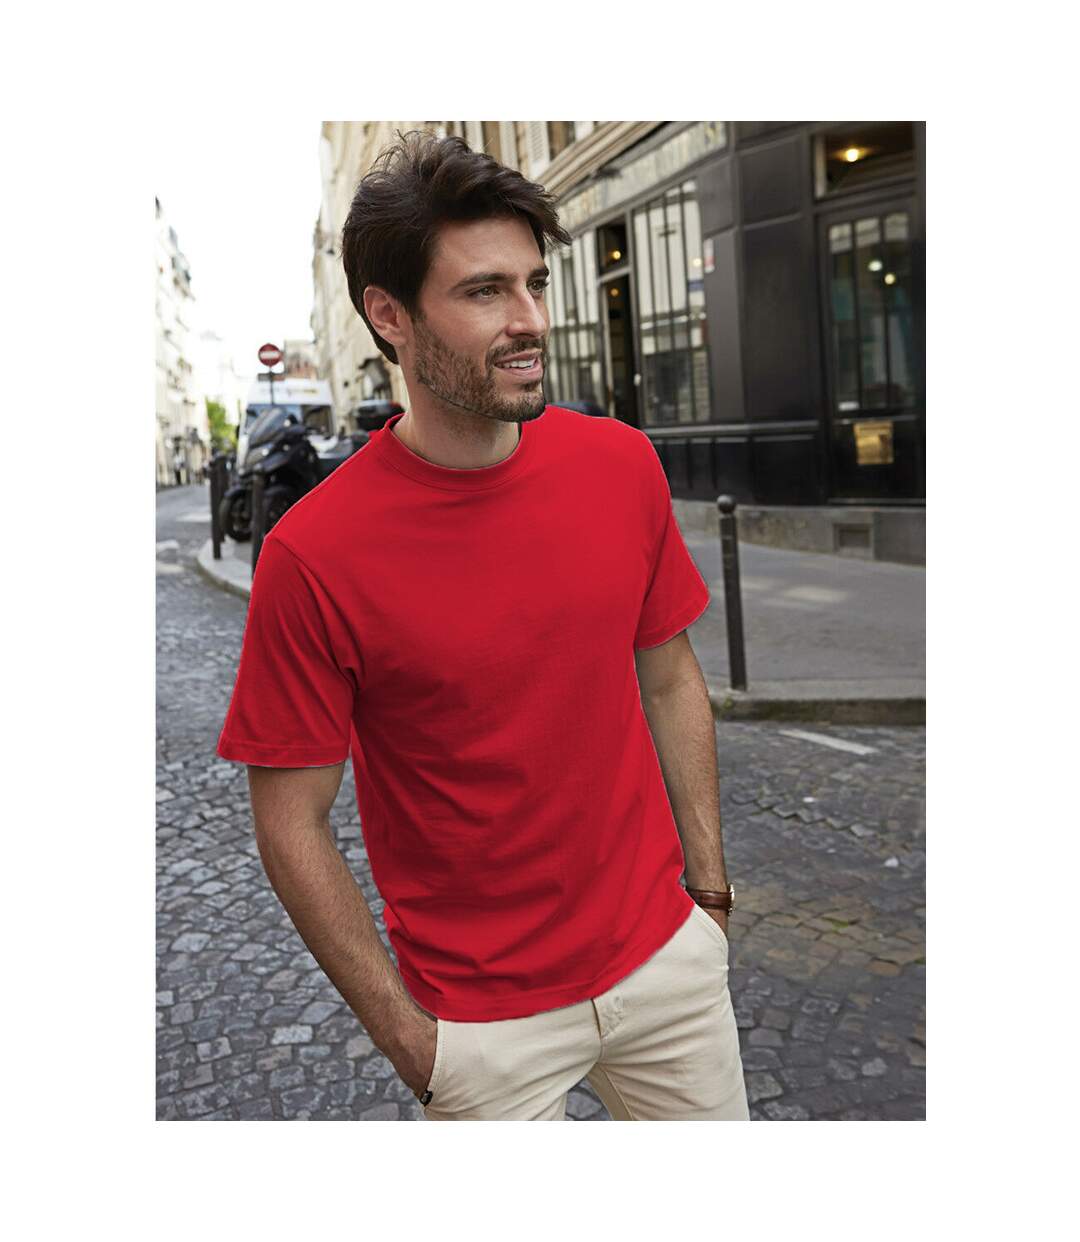 Tee Jays - T-shirt à manches courtes - Homme (Rouge) - UTBC3325